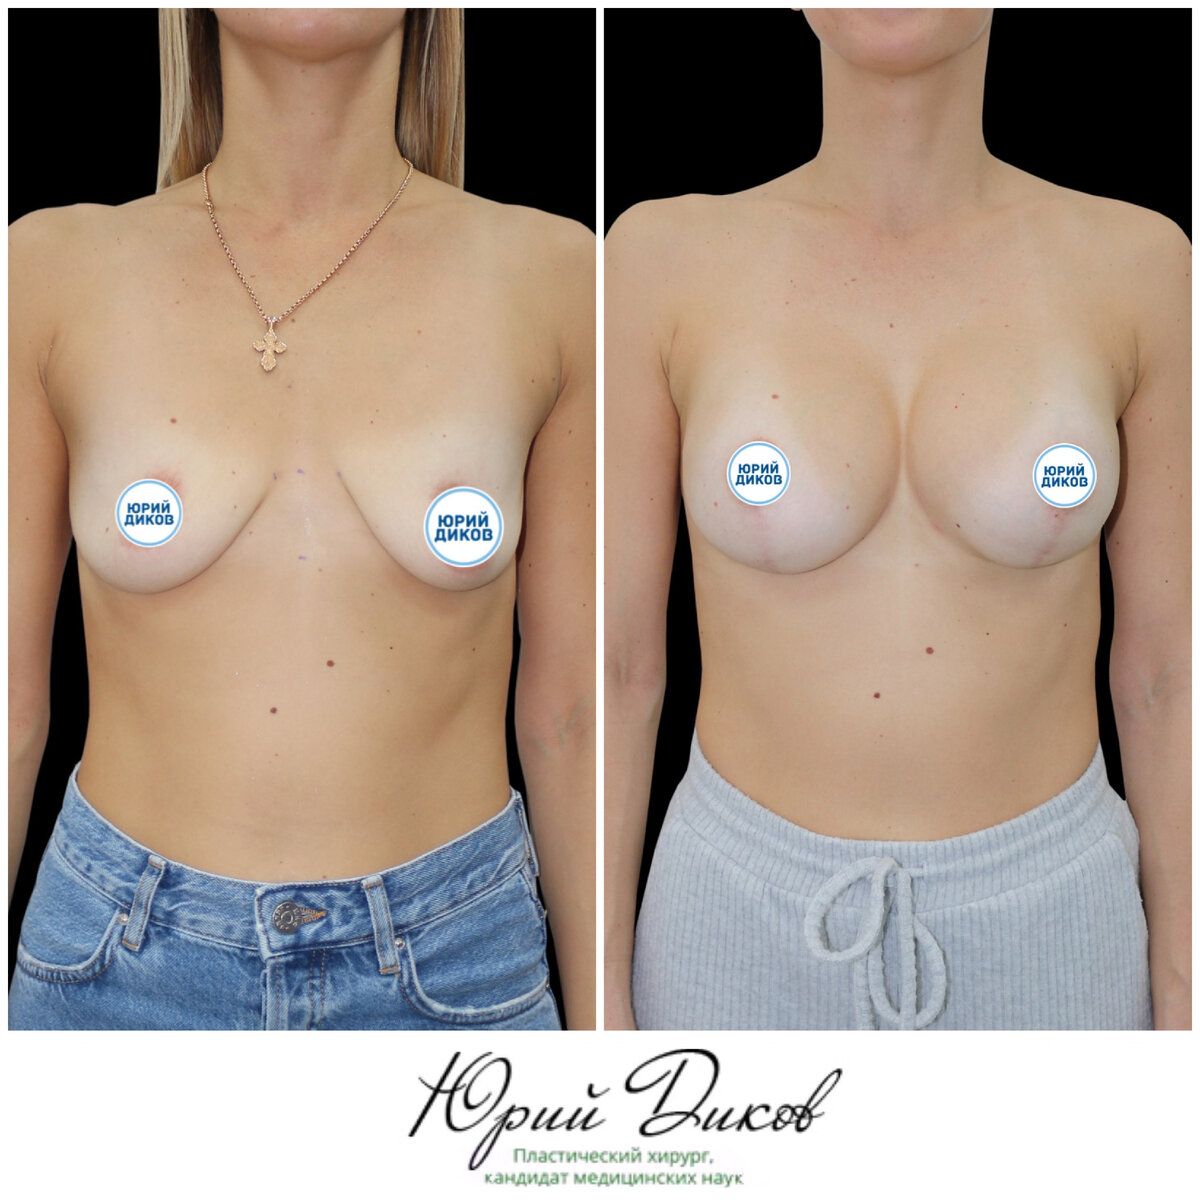 операция по подтяжке груди у женщин фото 110